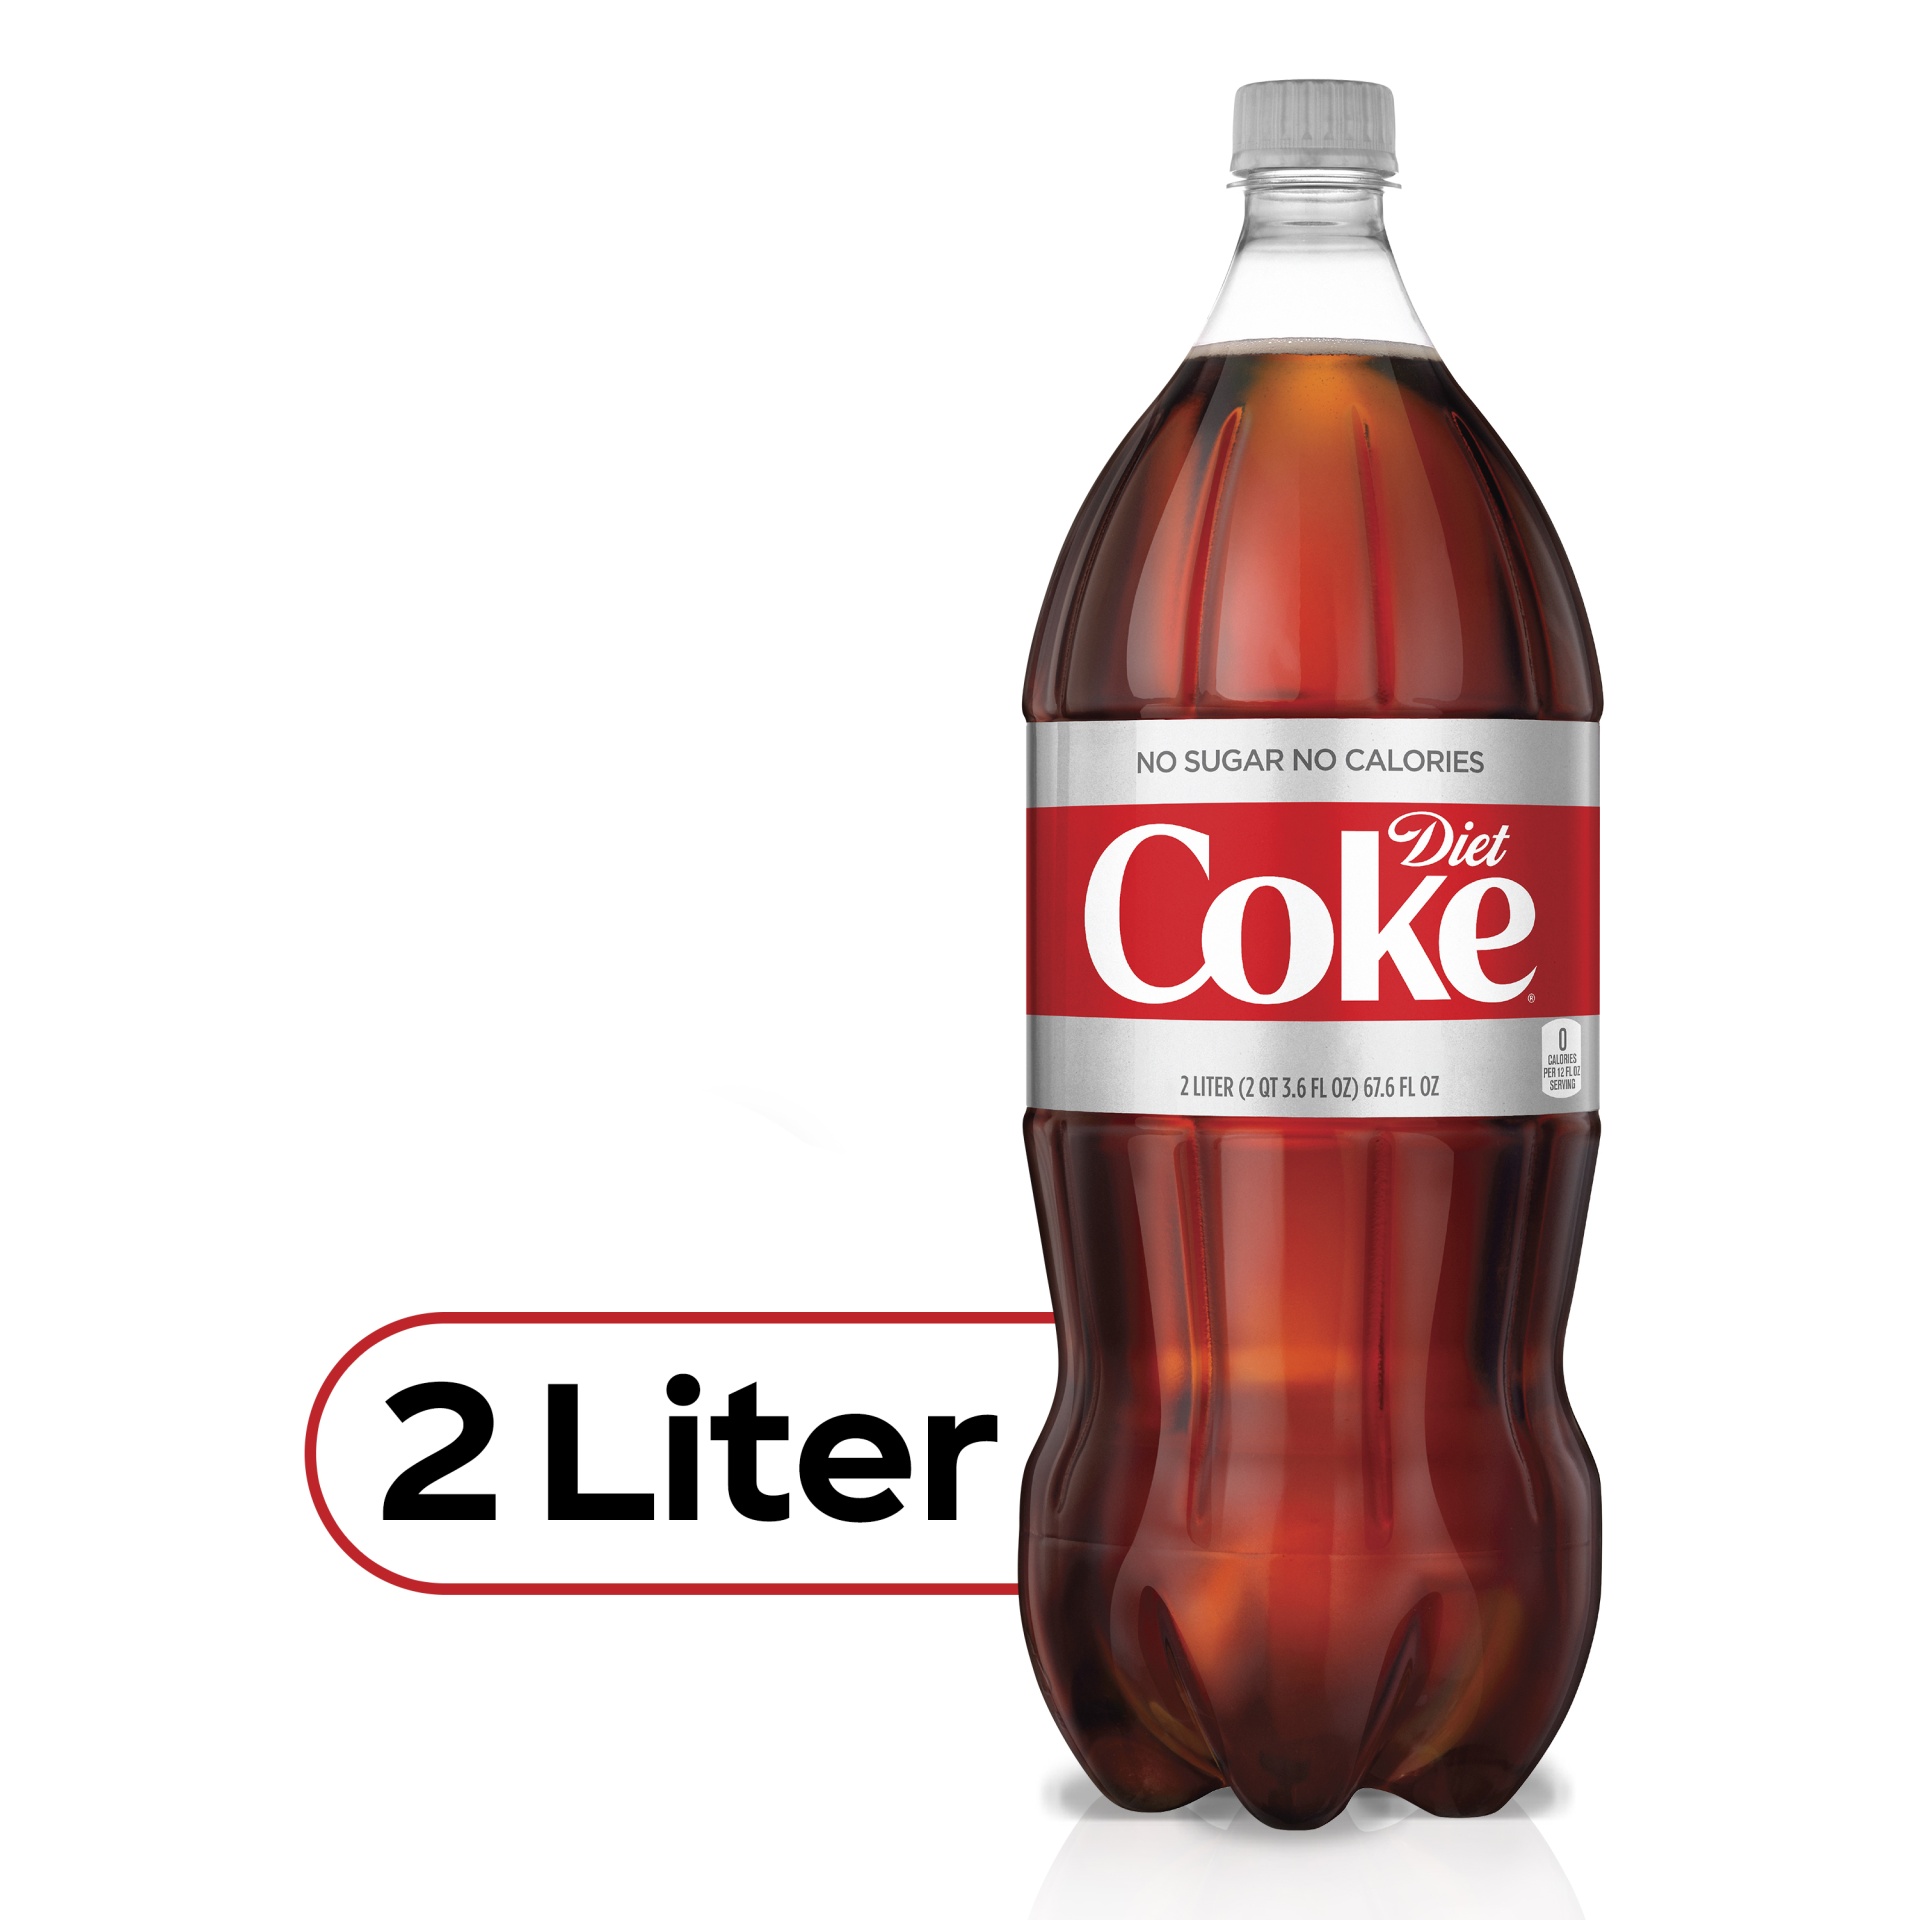 slide 1 of 5, Diet Coke, 2 liter